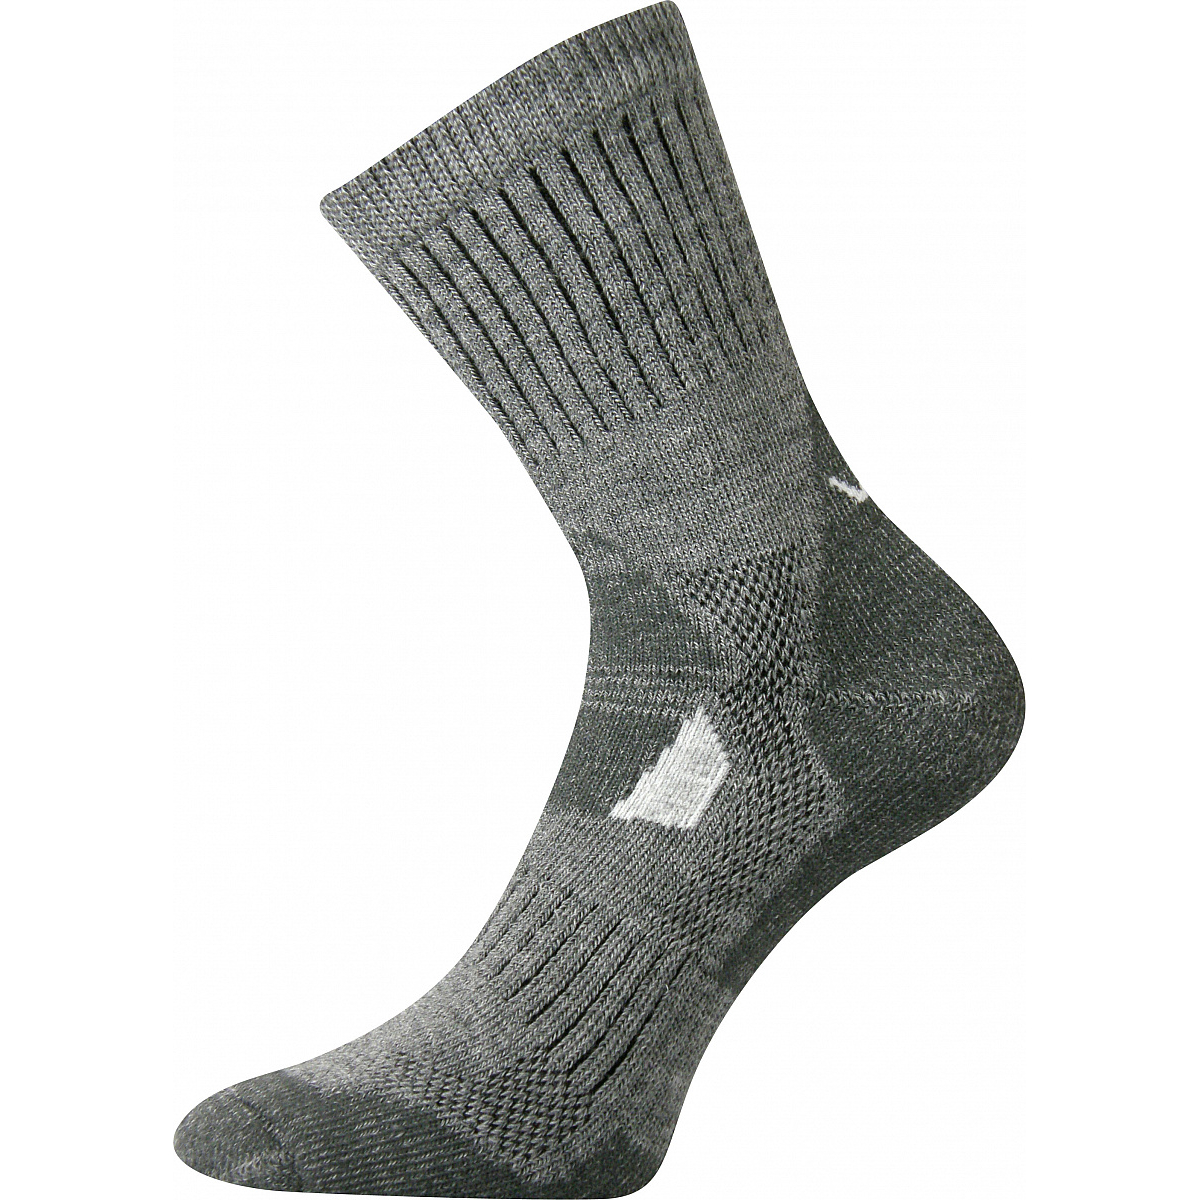 Extra teplé vlněné ponožky Voxx Stabil - světle šedé, 43-46